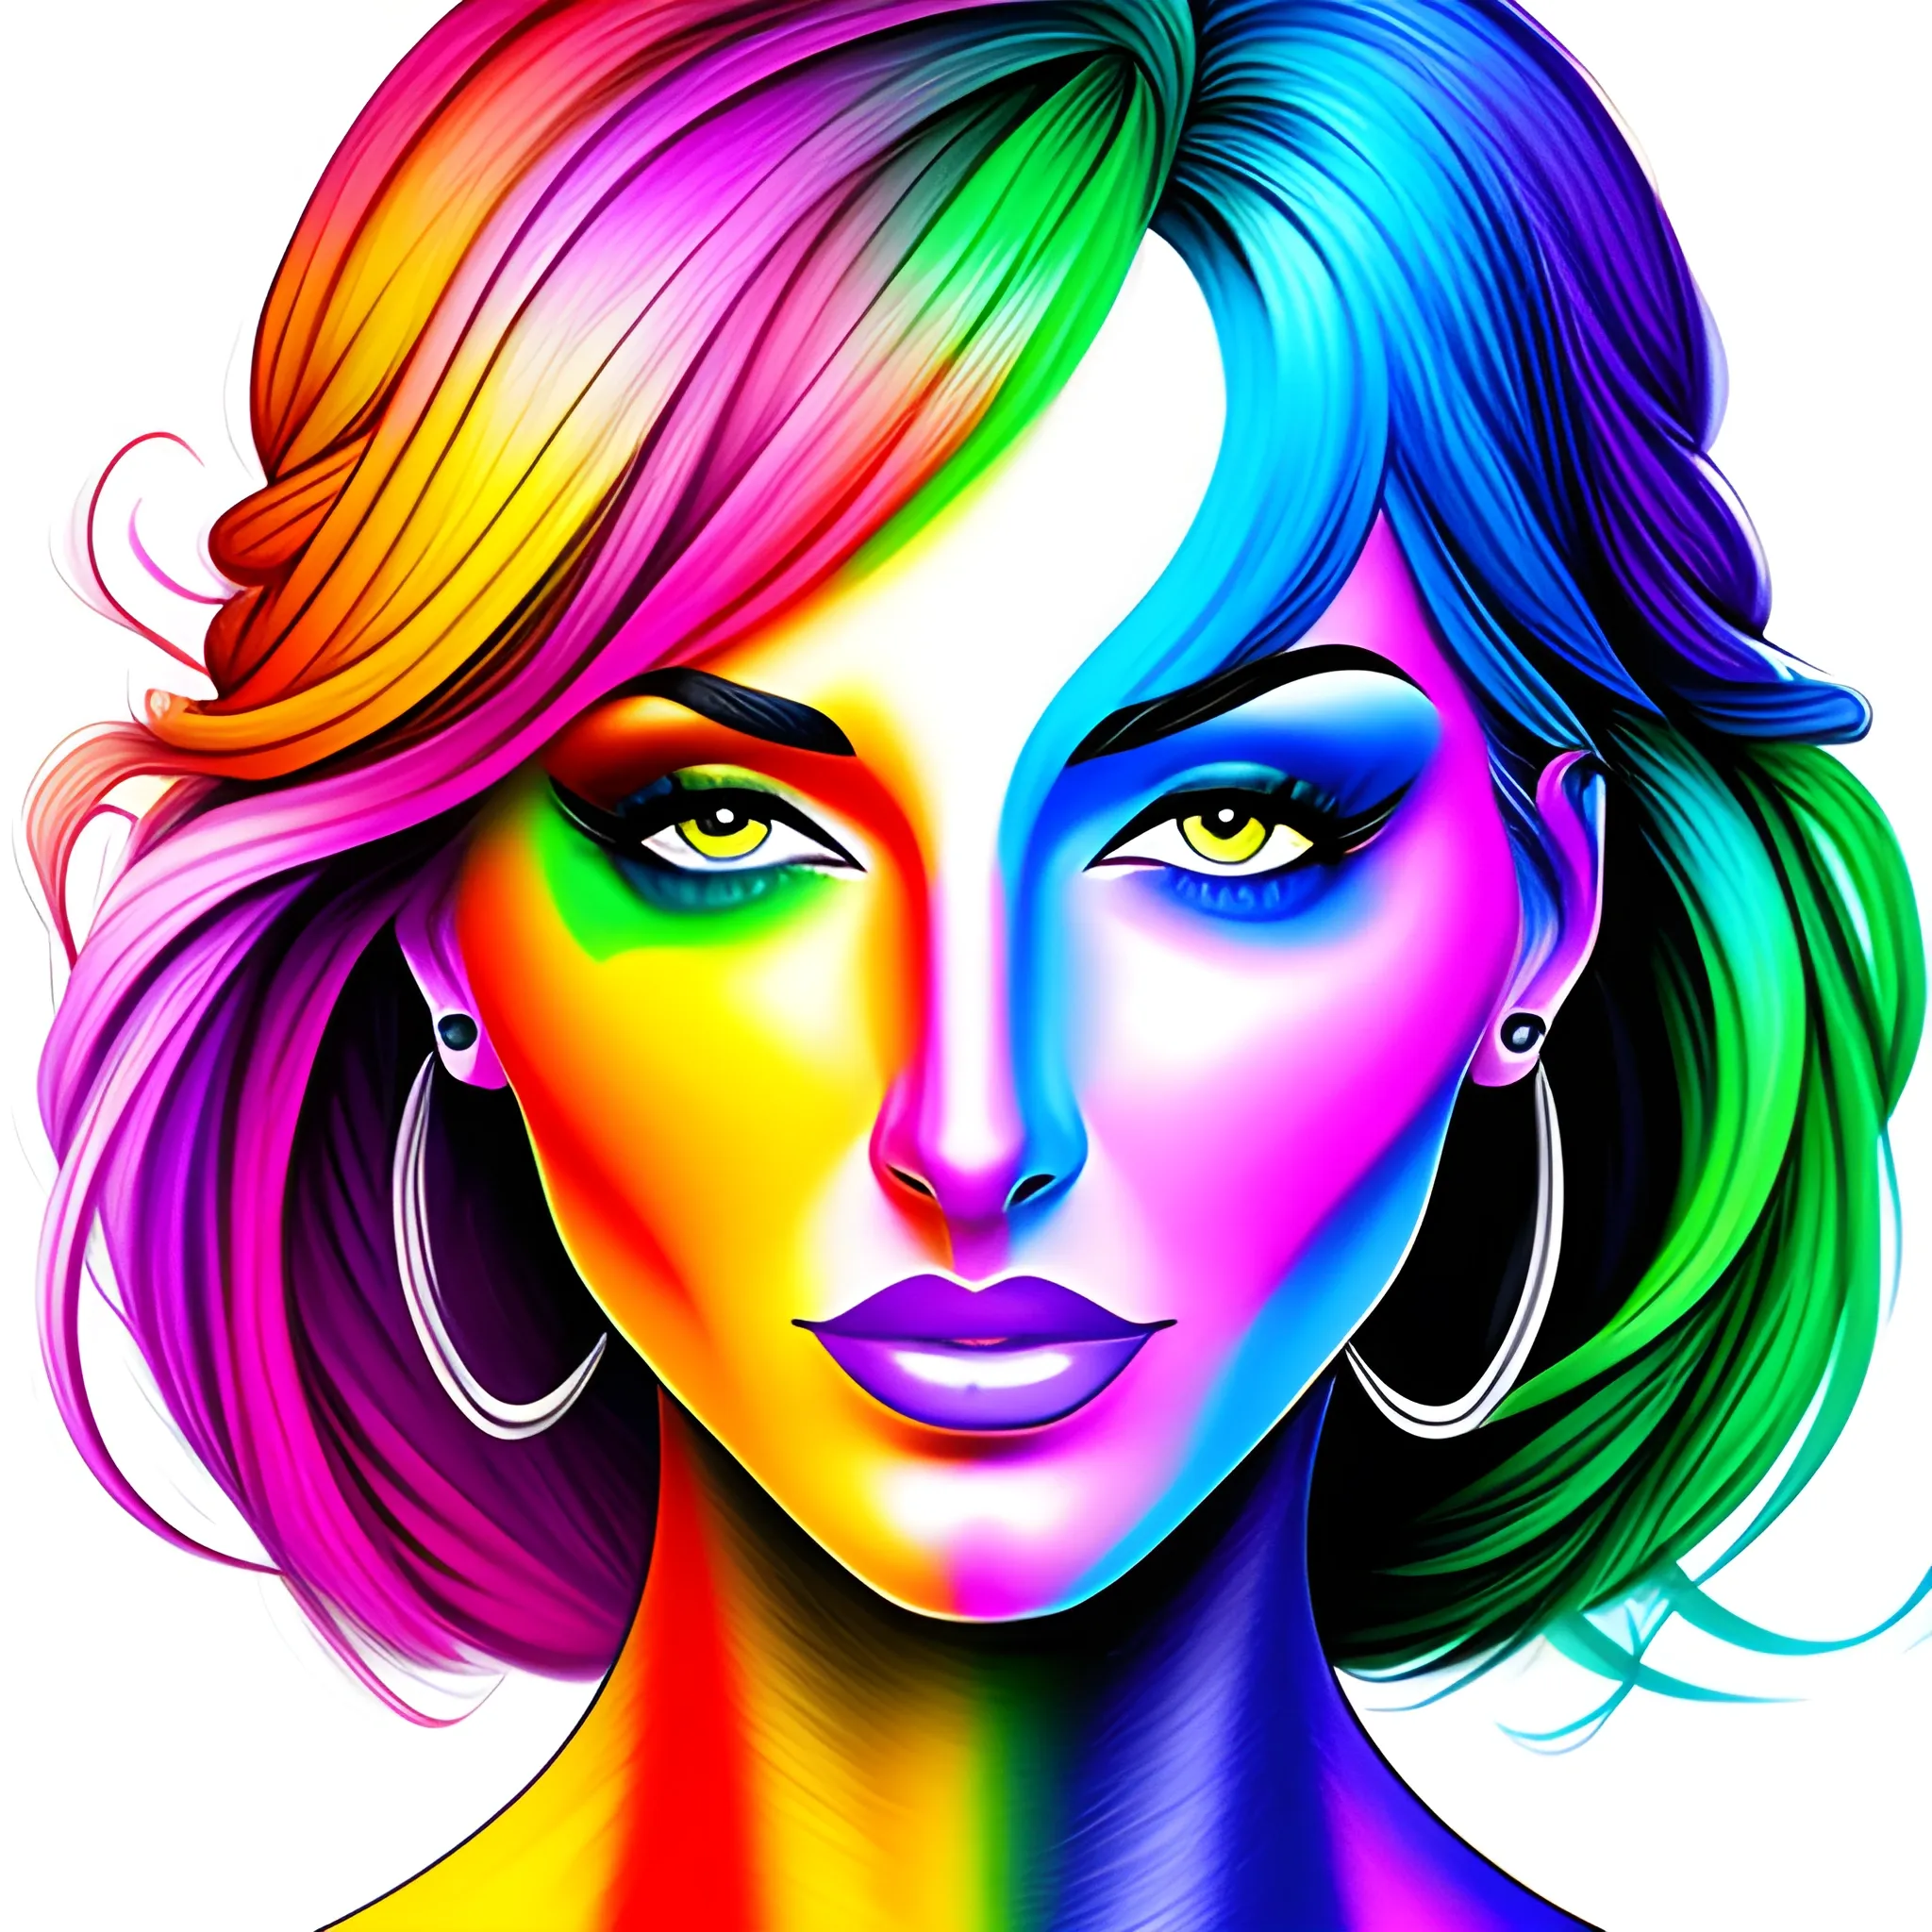 Digital art colorful girl drawing